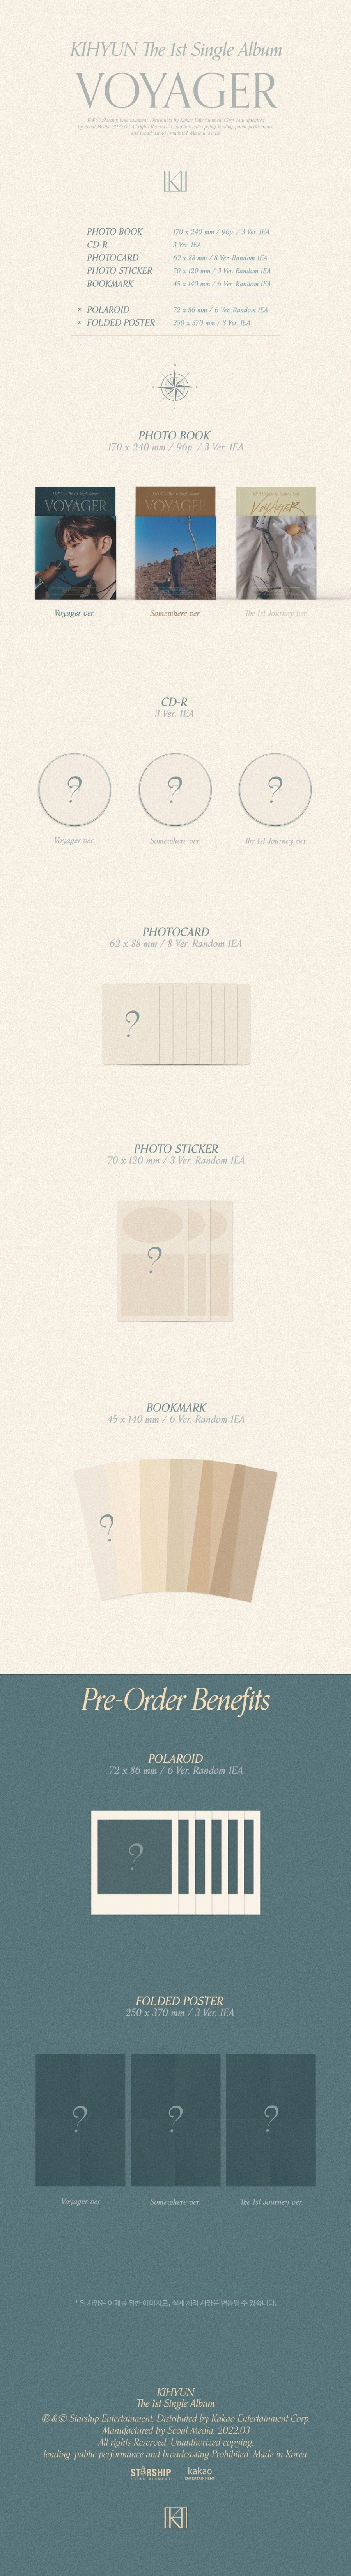 KIHYUN (MONSTA X) - 1st Single Album [VOYAGER] voyager monstax kihyun monsta-x KIHYUNalbum MONSTAXalbum